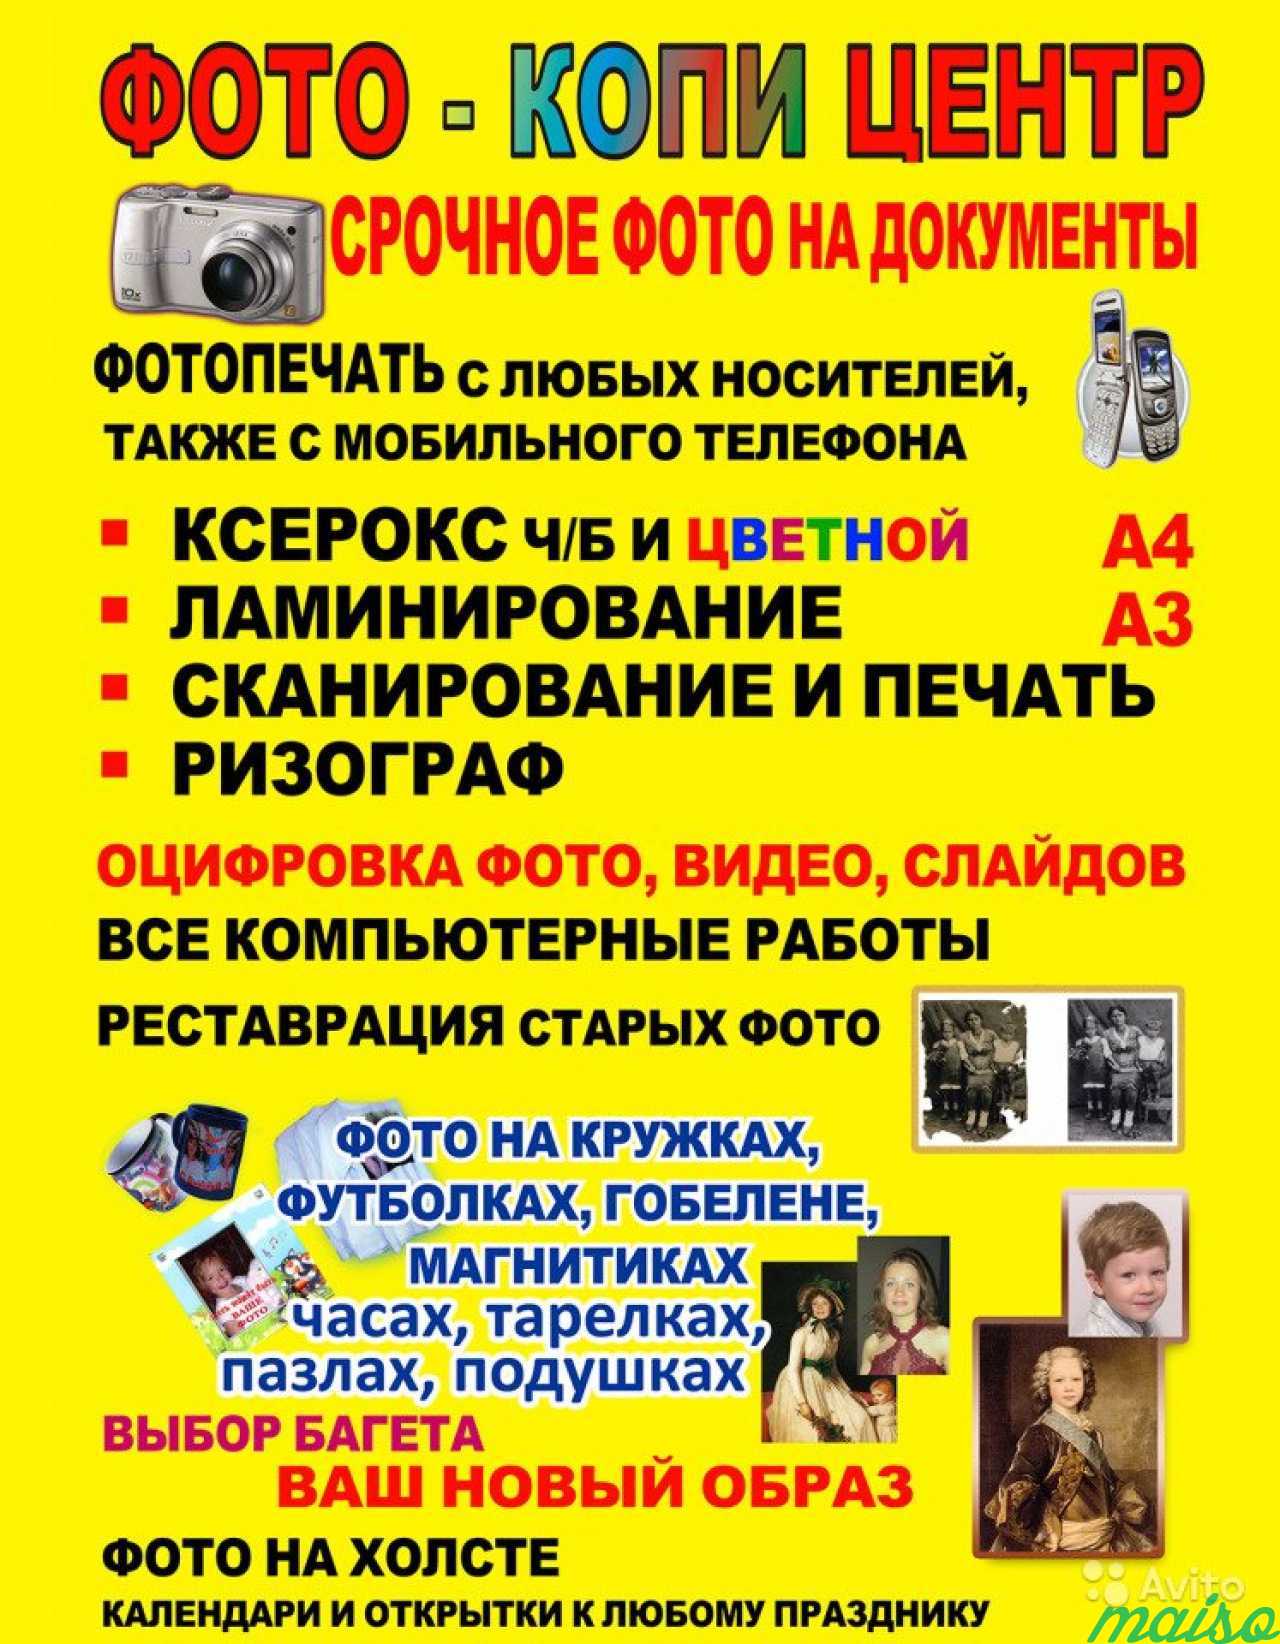 Полиграфия, фото, кружки,сувениры, ретушь, дизайн в Санкт-Петербурге. Фото 1